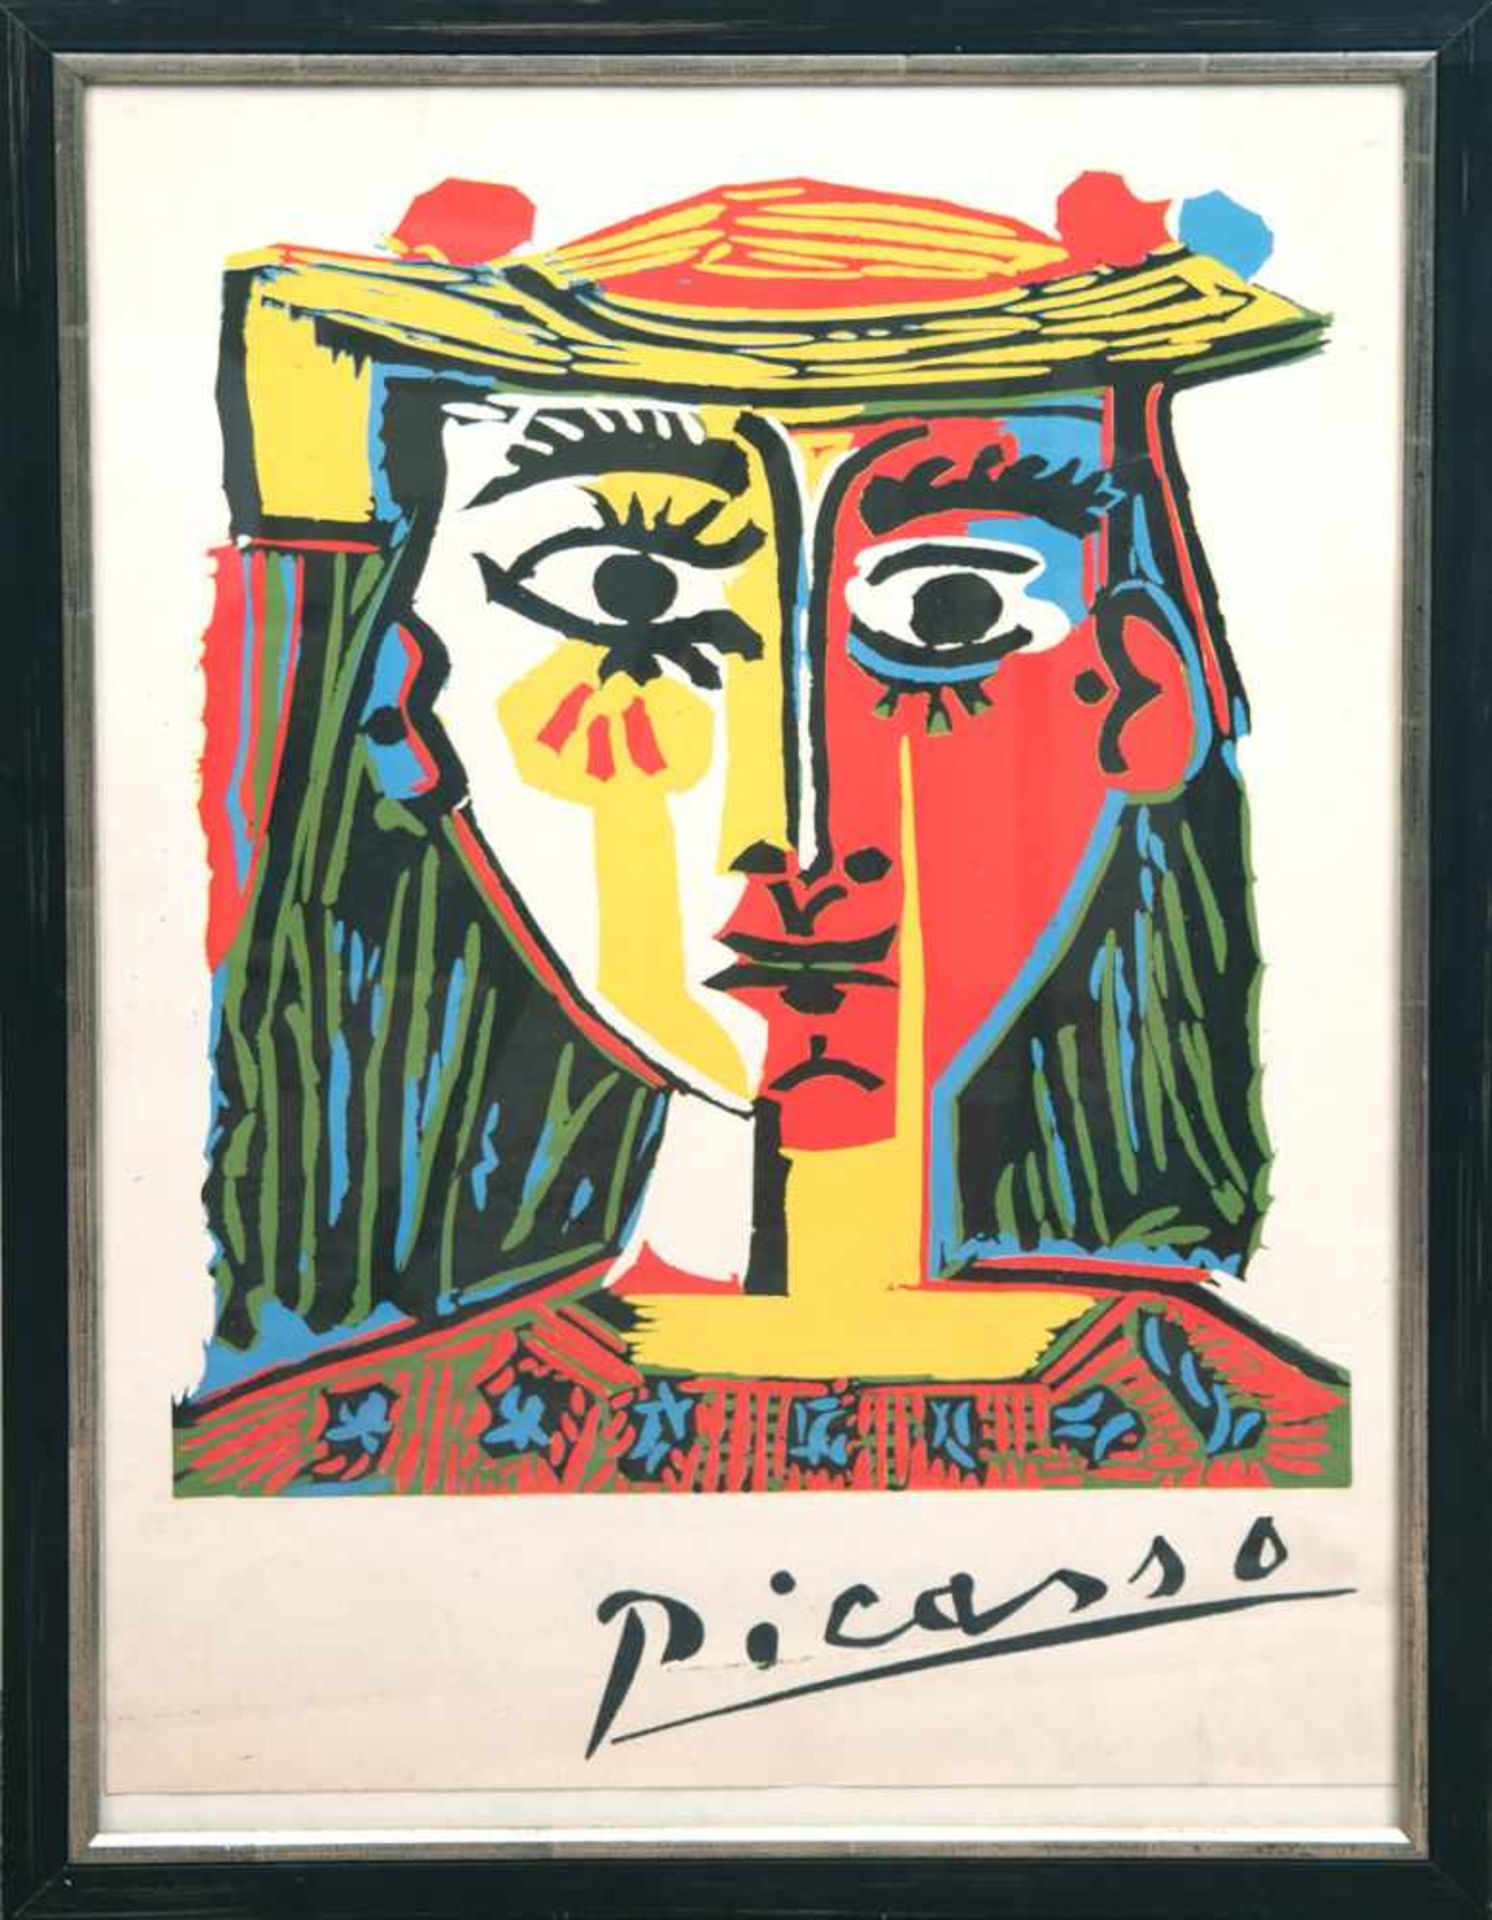 Plakat von Pablo Picasso "Frau mit Hut", Litho., sign. Picasso, 61x42,5 cm, hinter Glasund Rahmen